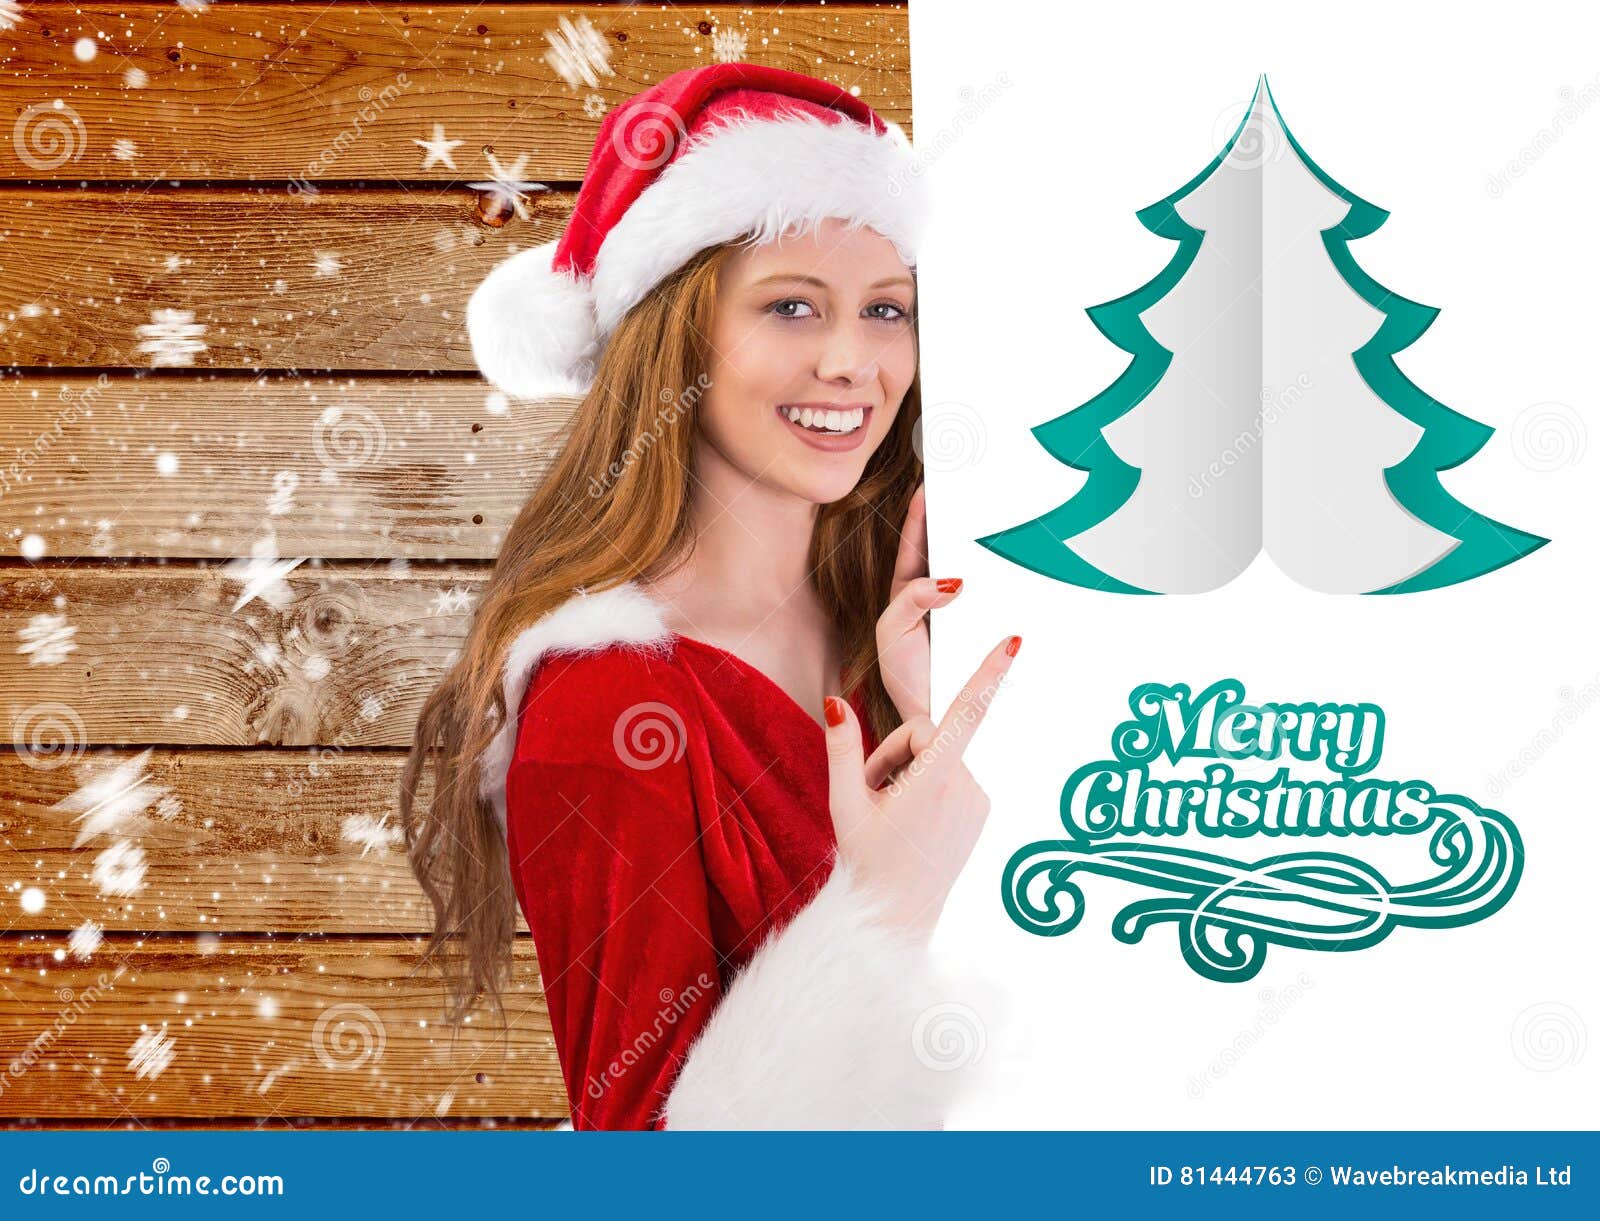 Buon Natale Donne.Donna In Costume Di Santa Che Indica Al Cartello Che Desidera Il Buon Natale Immagine Stock Immagine Di Tenuta Generato 81444763